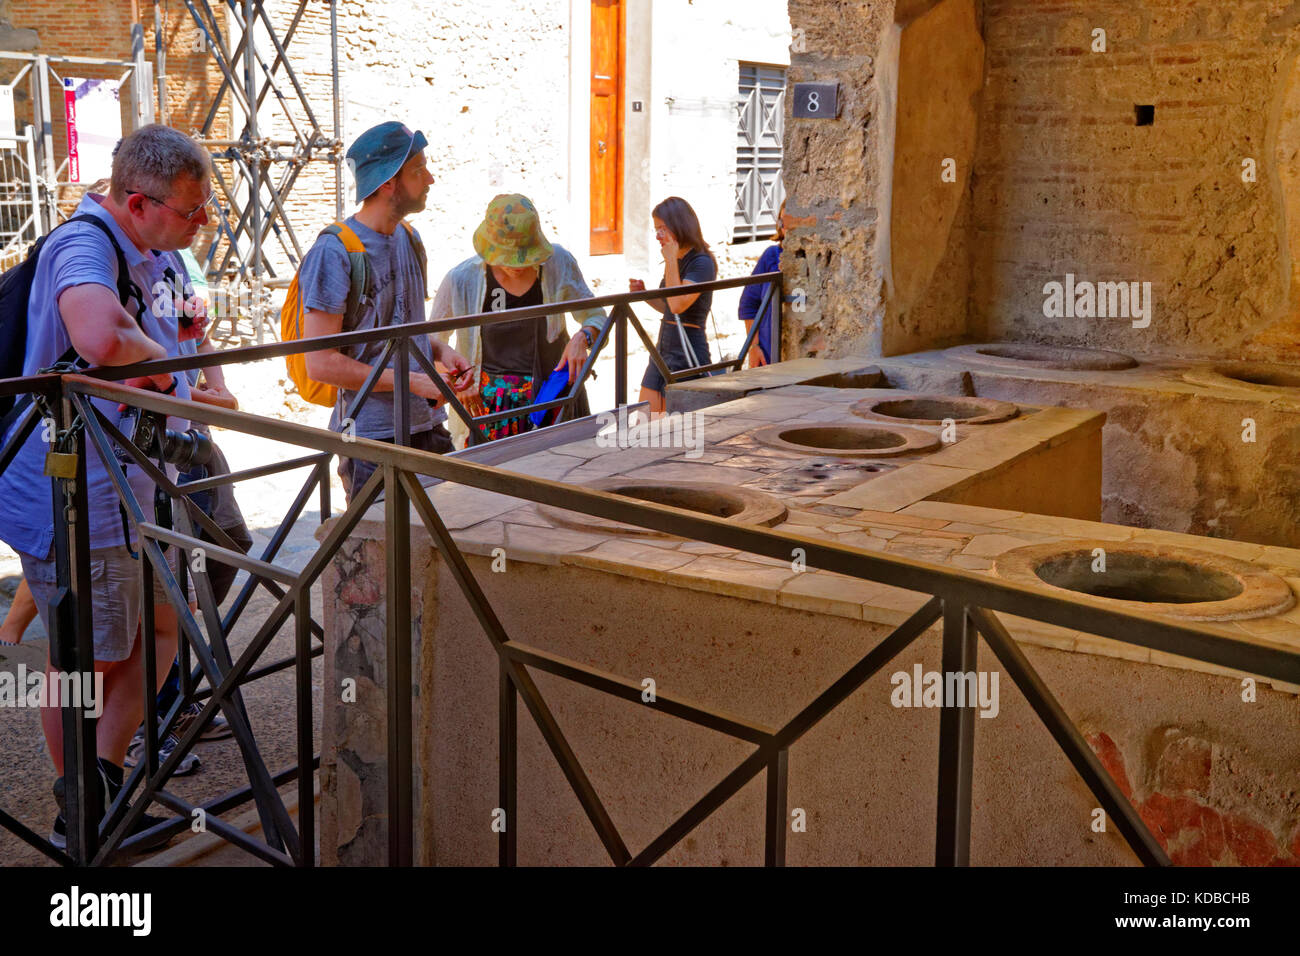 Tienda o cafetería permanece (thermopolia) en las ruinas de la ciudad romana de Pompeya Scavi en Pompeya, cerca de Nápoles, en el sur de Italia. Foto de stock